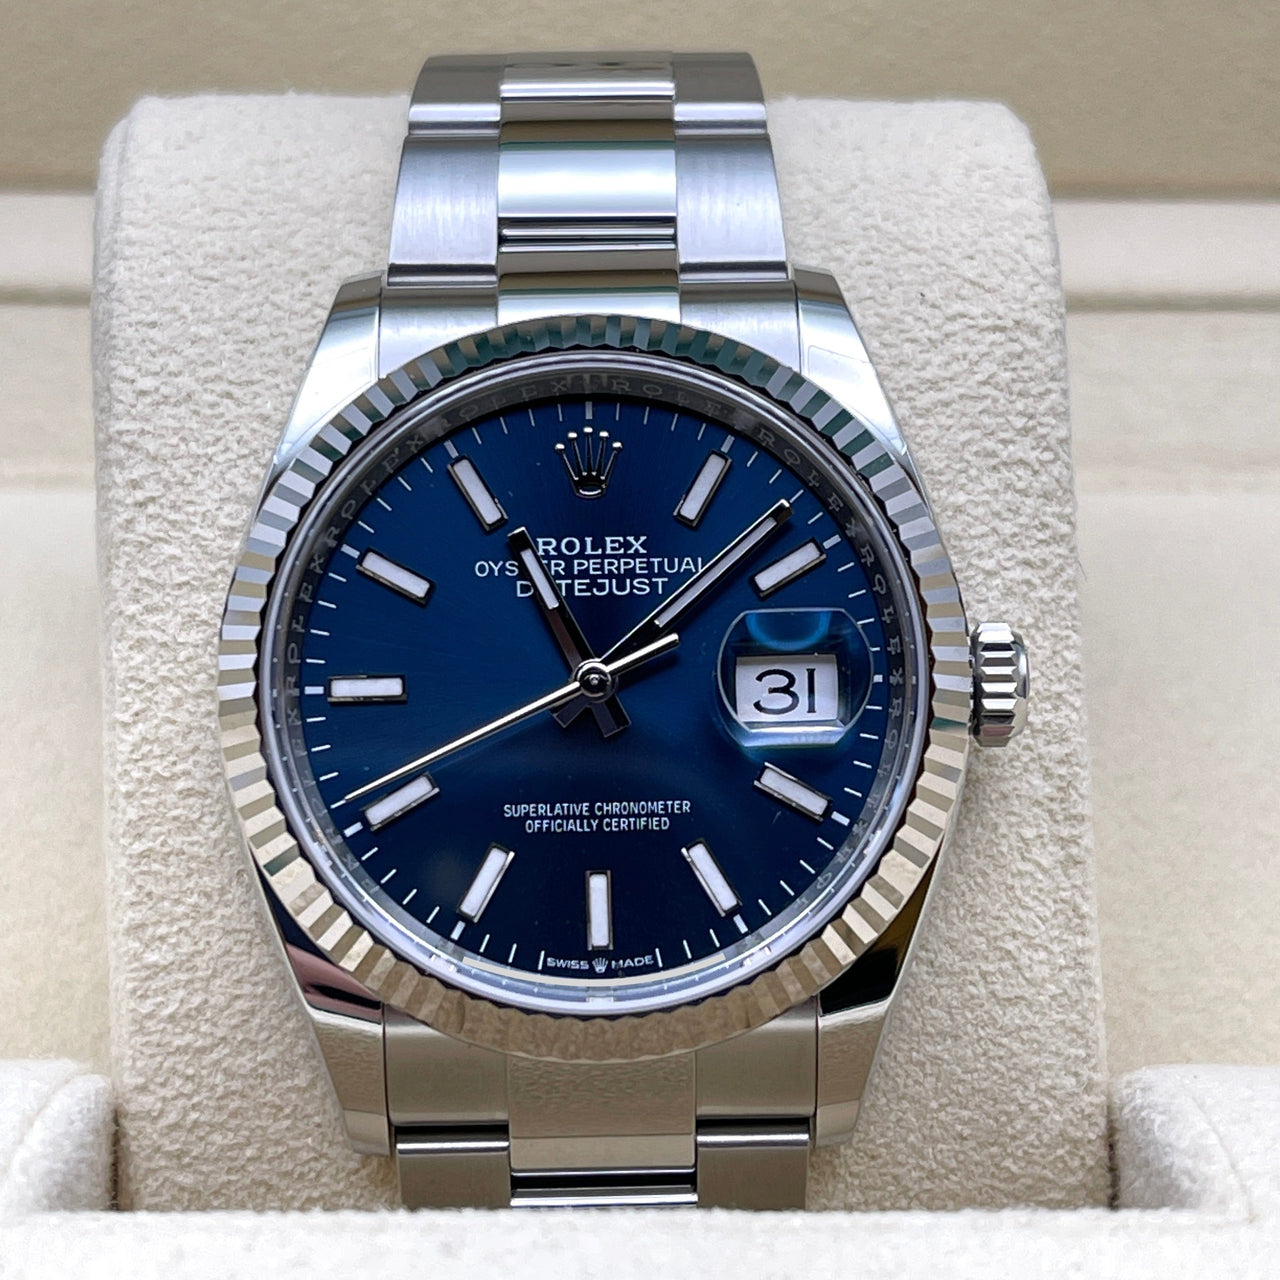 Luxury Watch Rolex Datejust 36 White Gold & Stainless Steel Blue Dial 126234 Wrist Aficionado